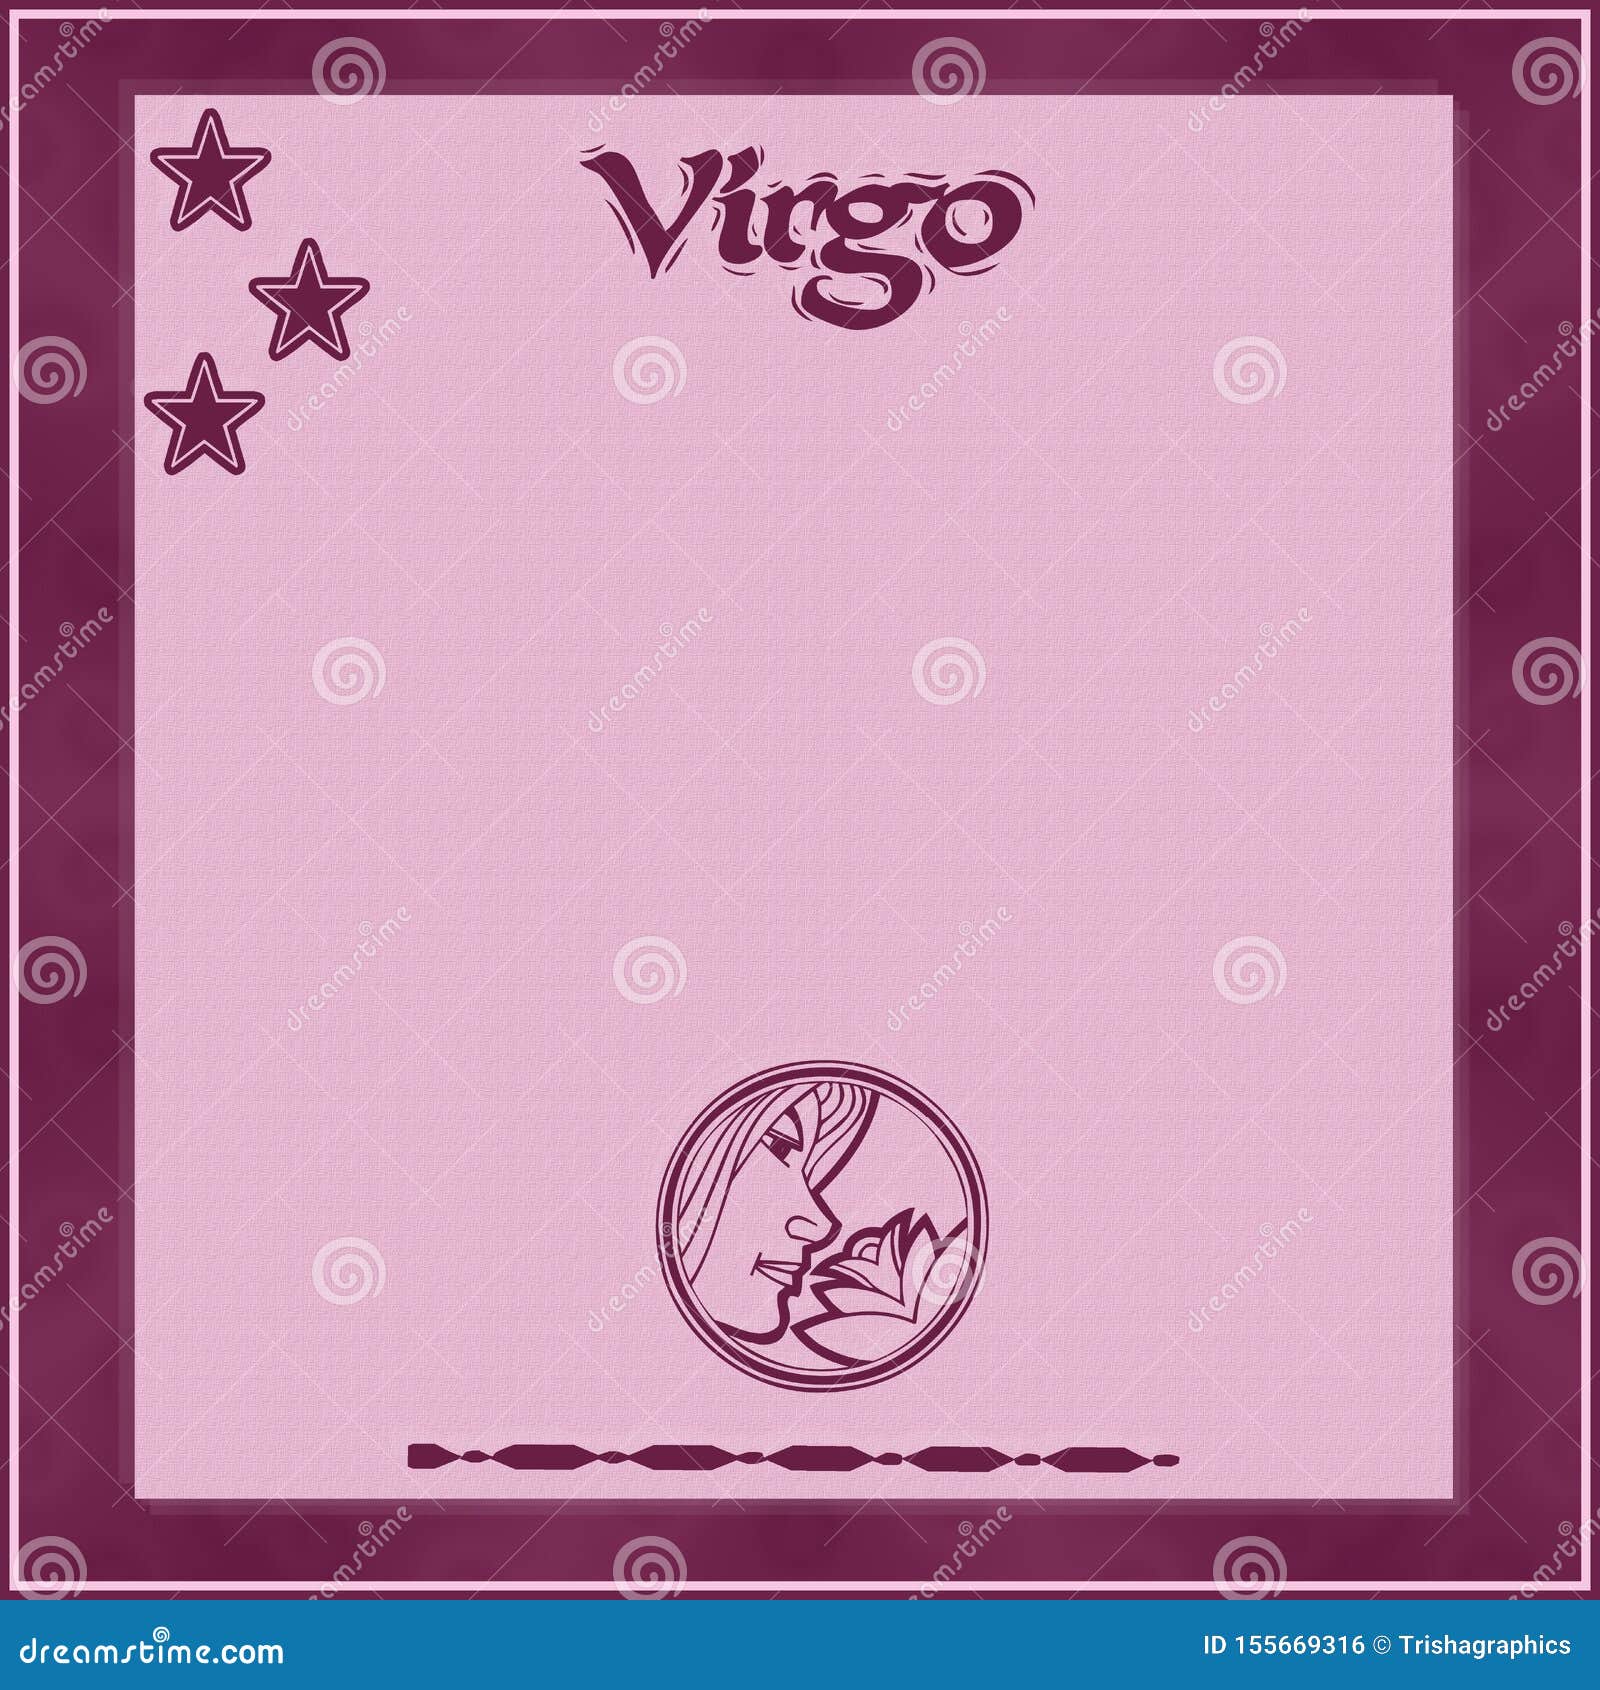 elegant frame with zodiac sign-virgo